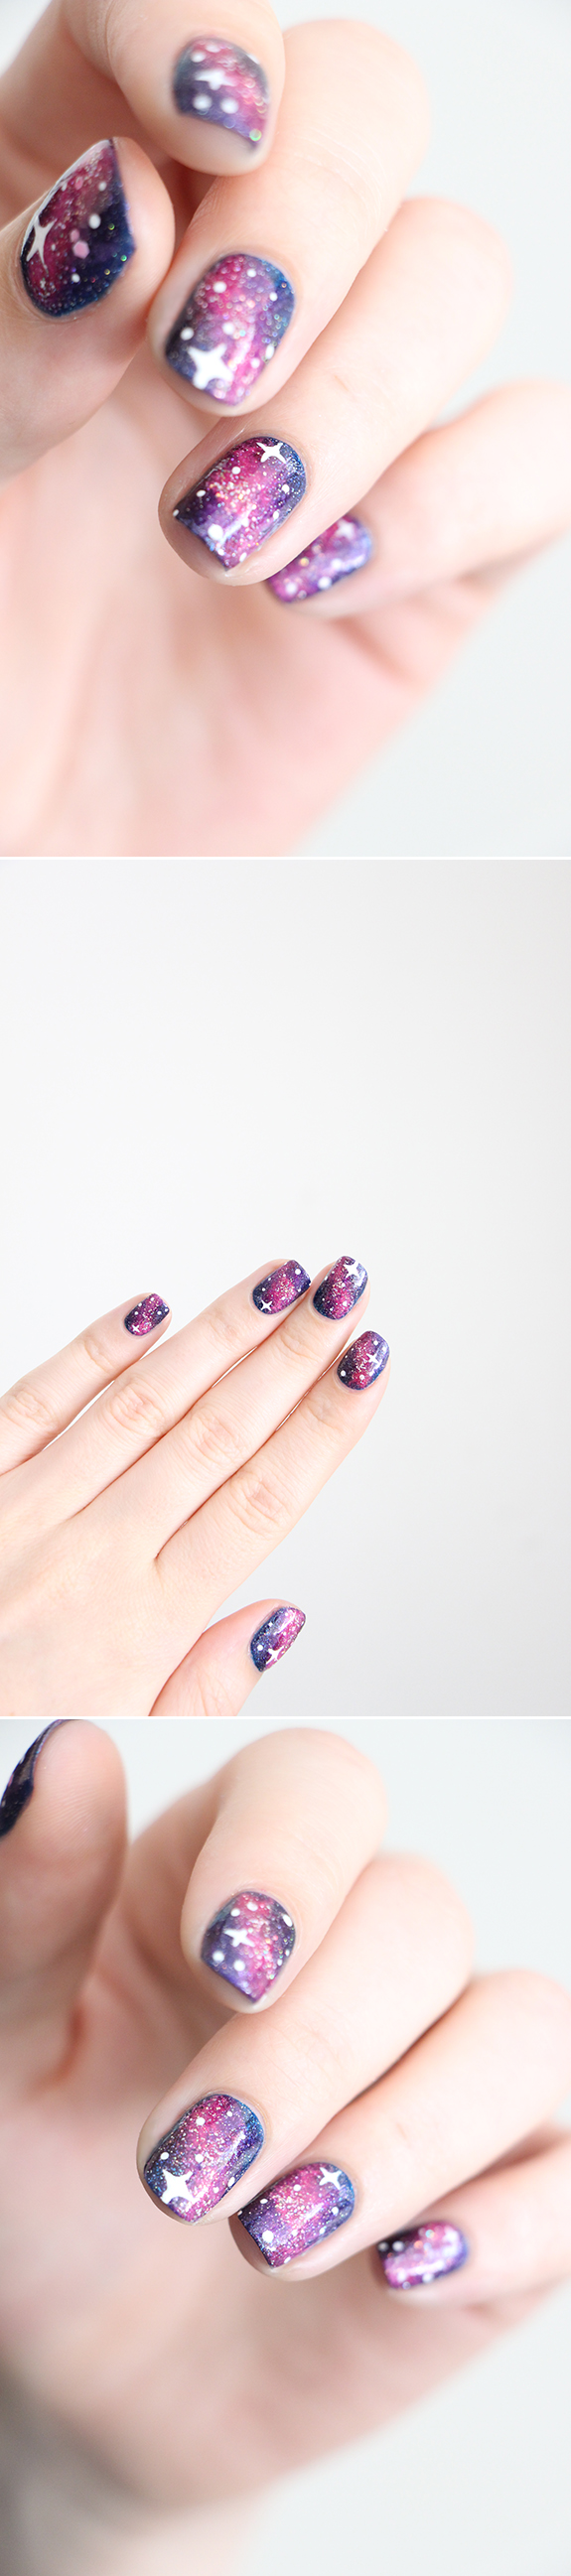 galaxy-nails-4